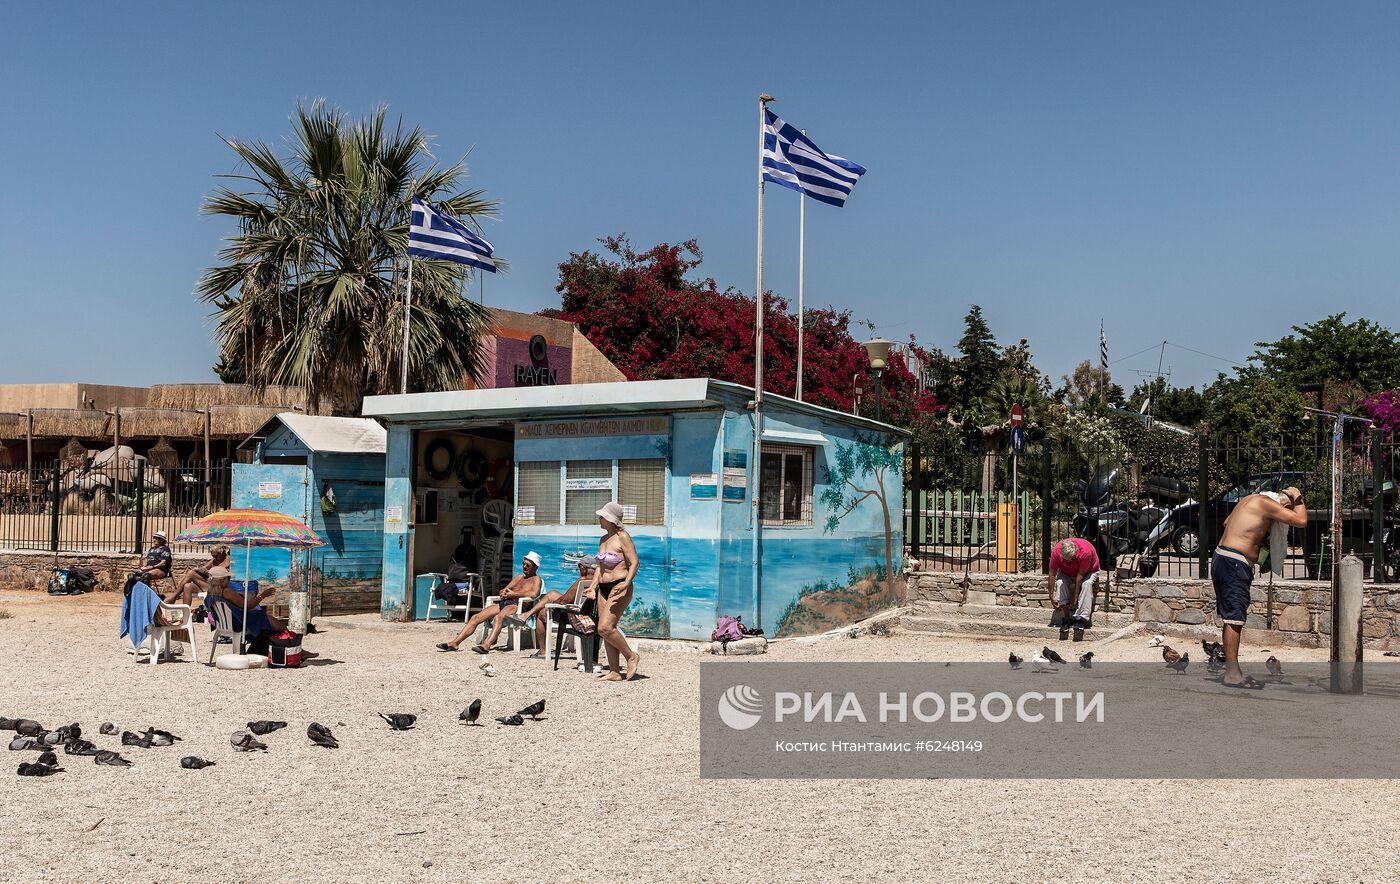 Ослабление карантинного режима в Греции